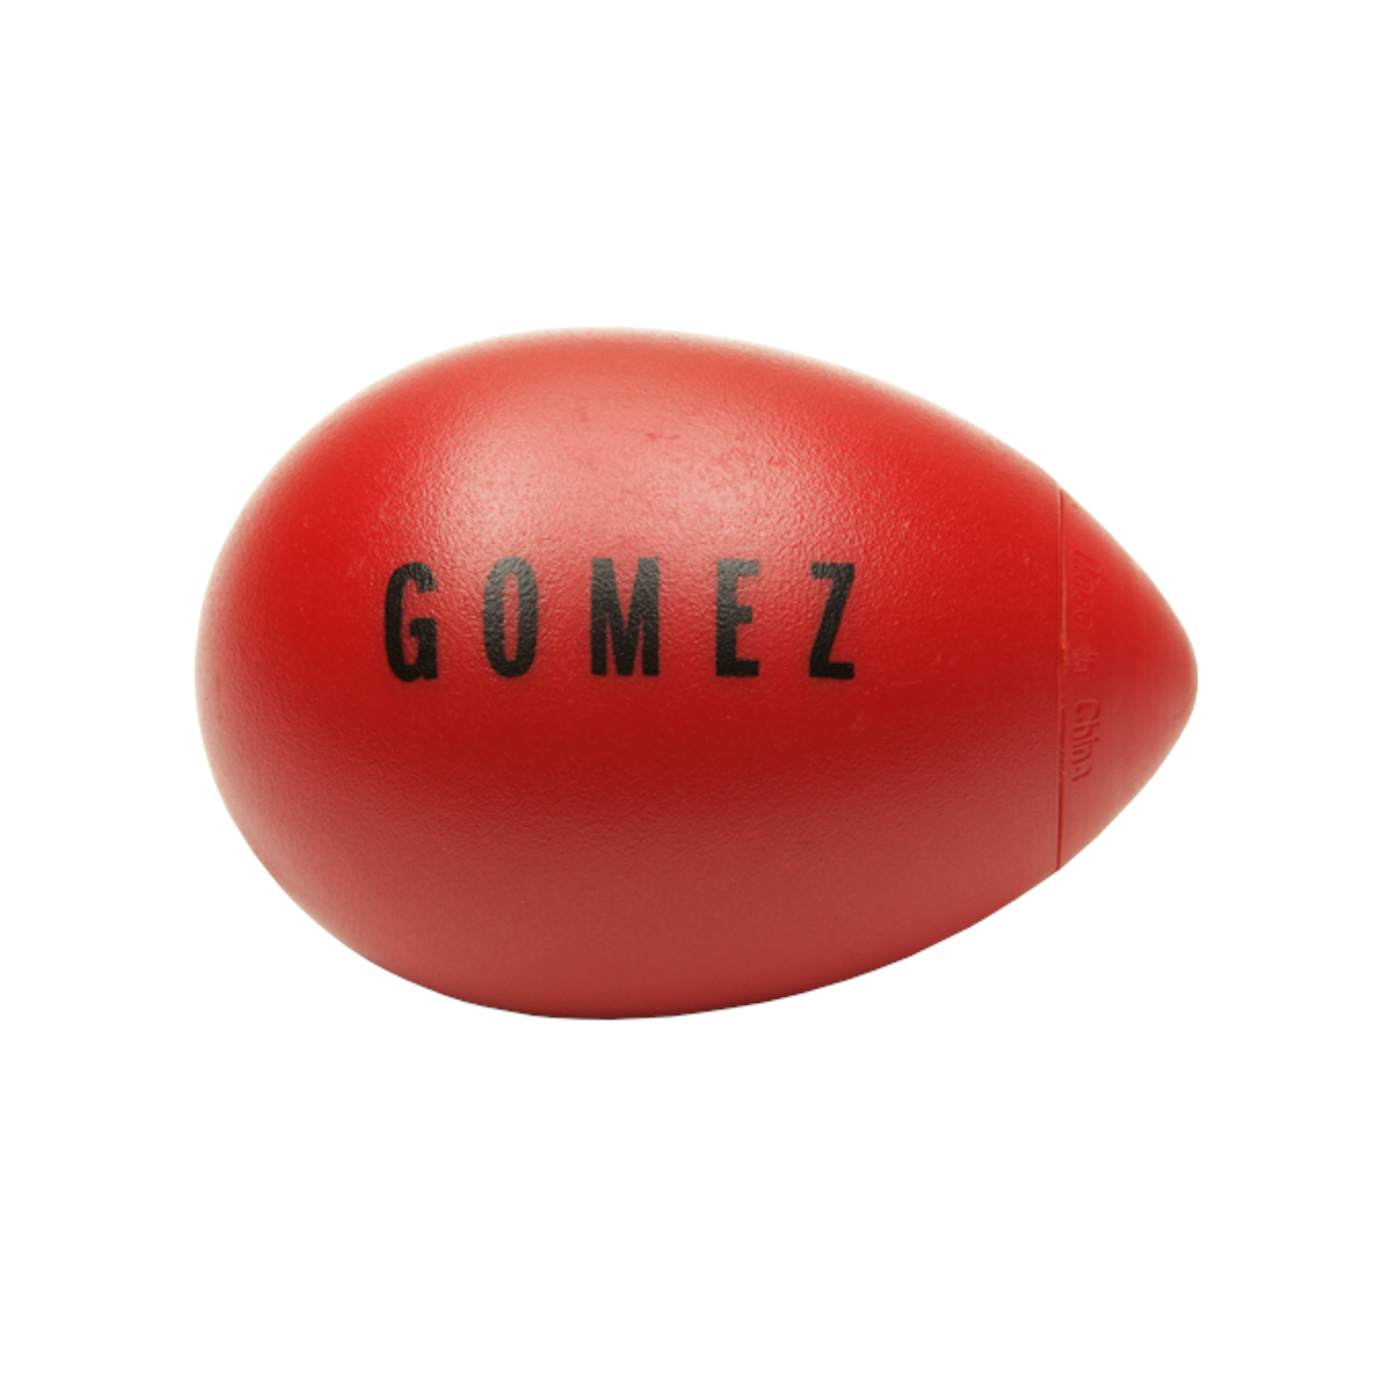 Gomez "Logo" Egg Shaker-Noise Maker